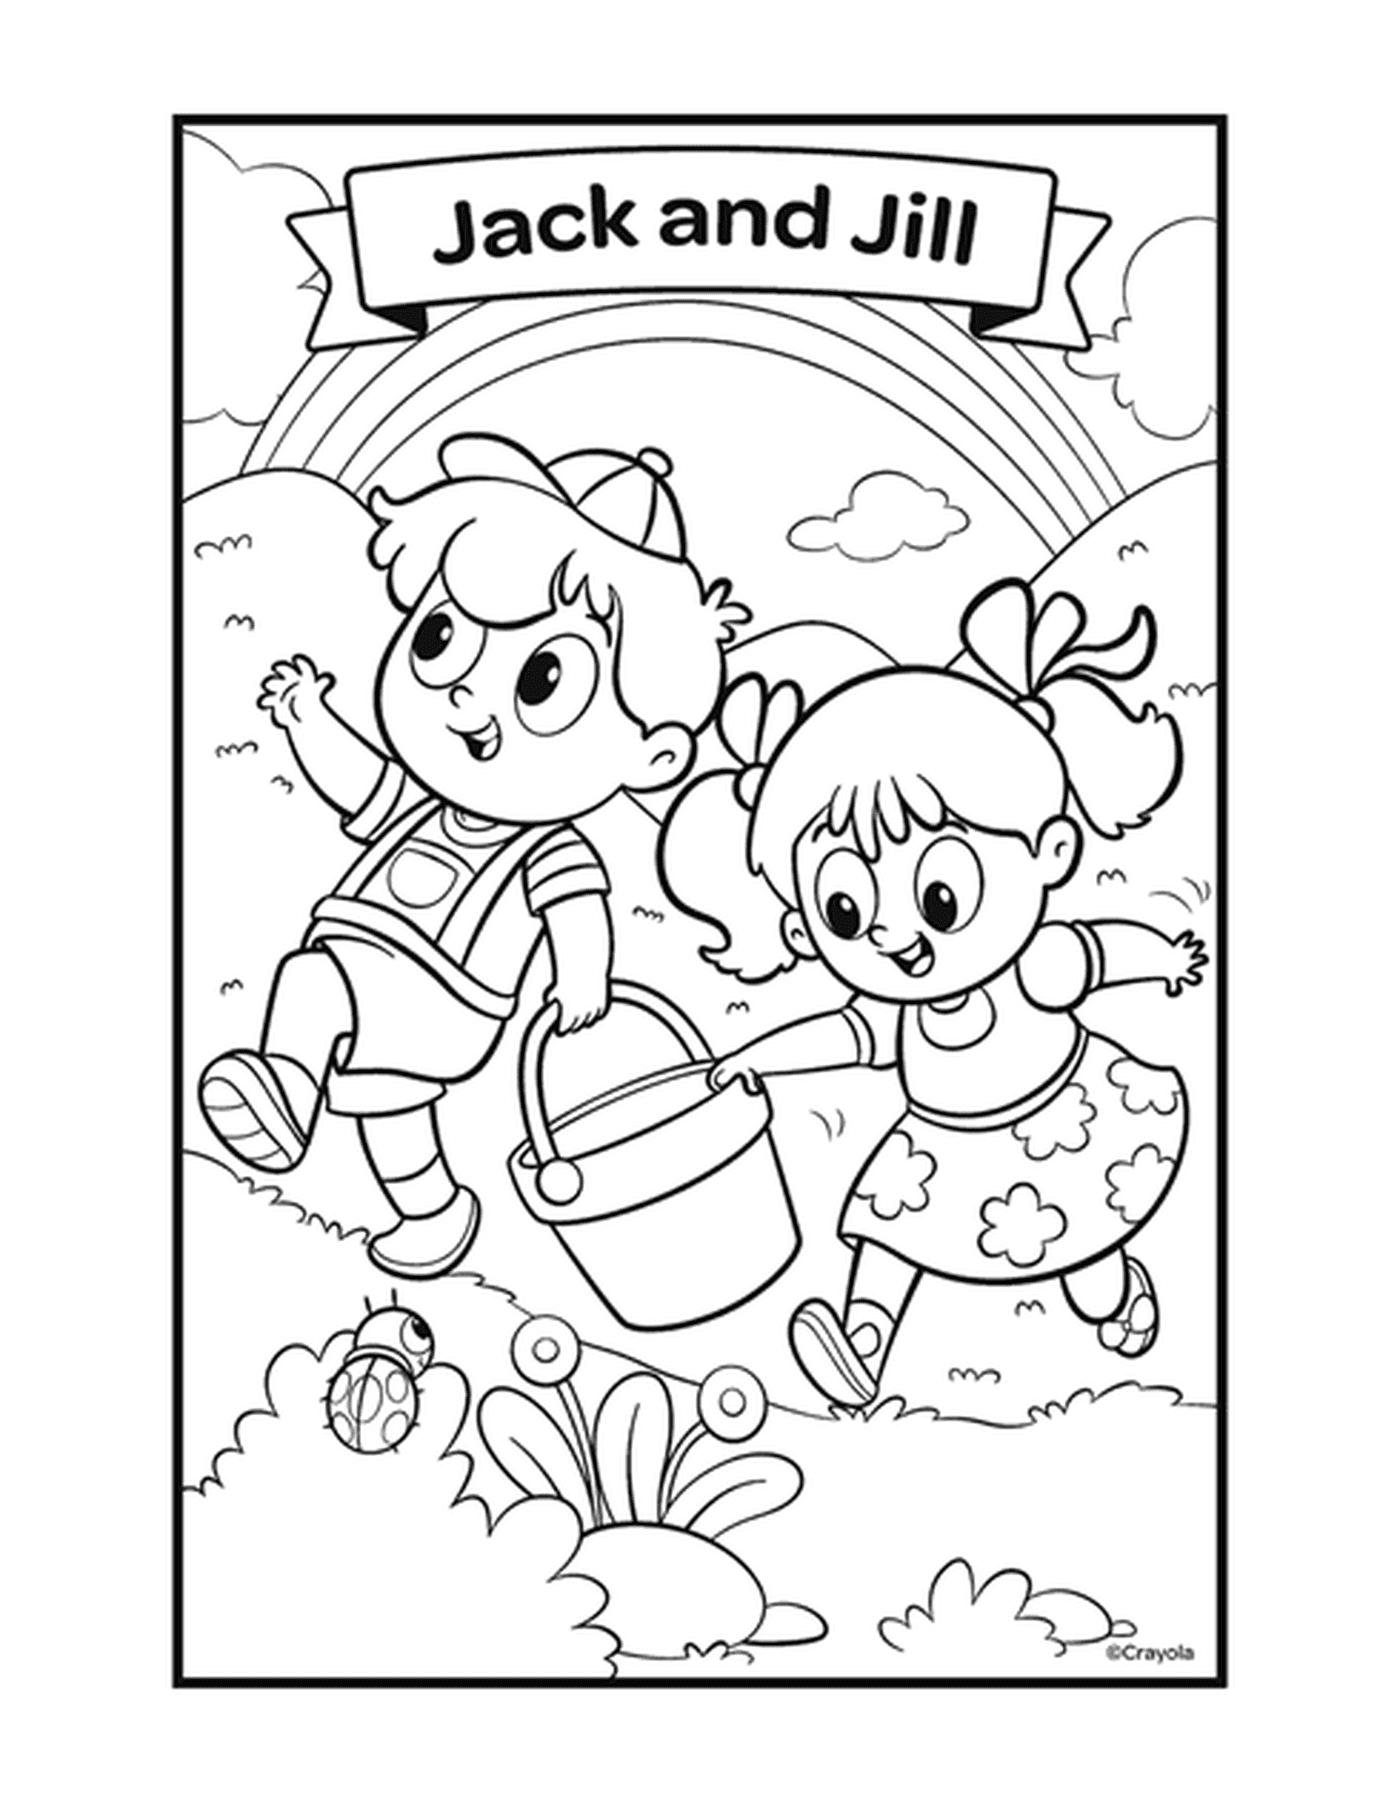   La comptine Jack et Jill avec deux enfants jouant avec un seau 